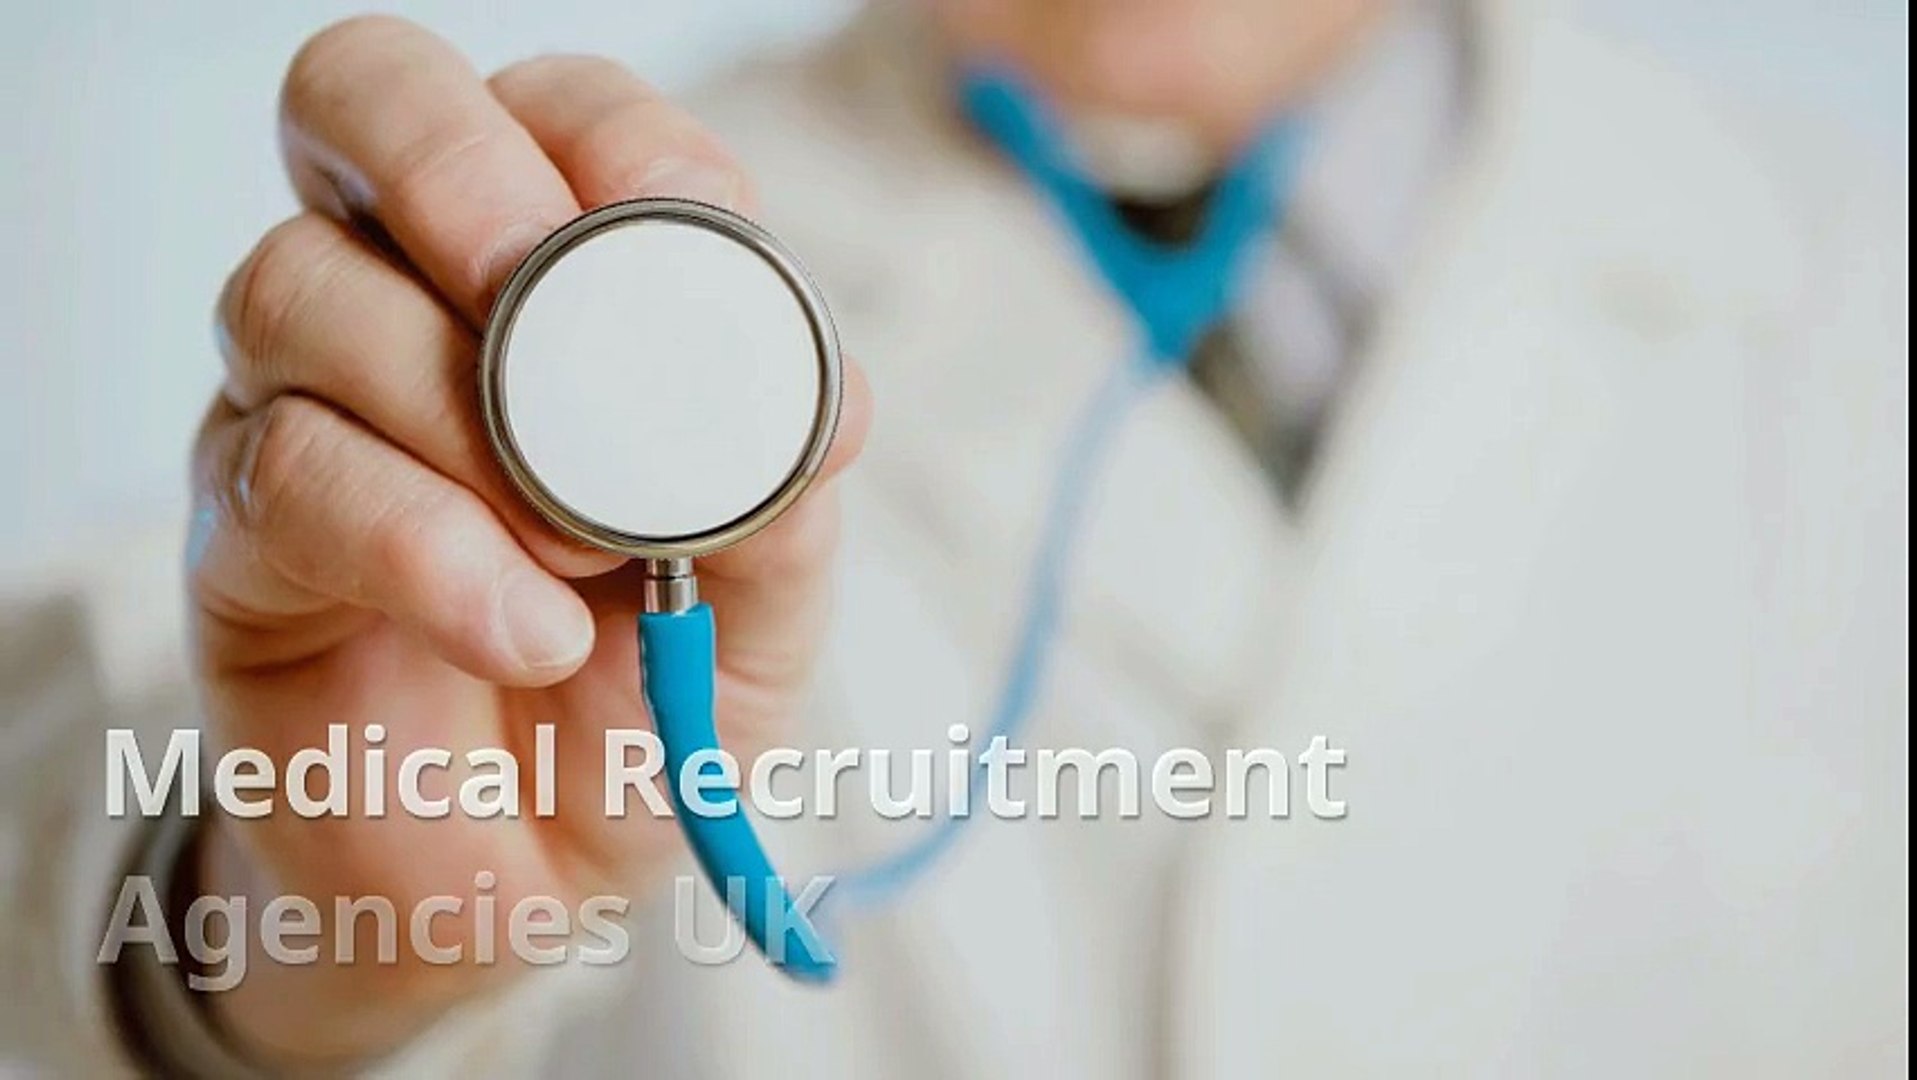 Medical Recruitment agencies